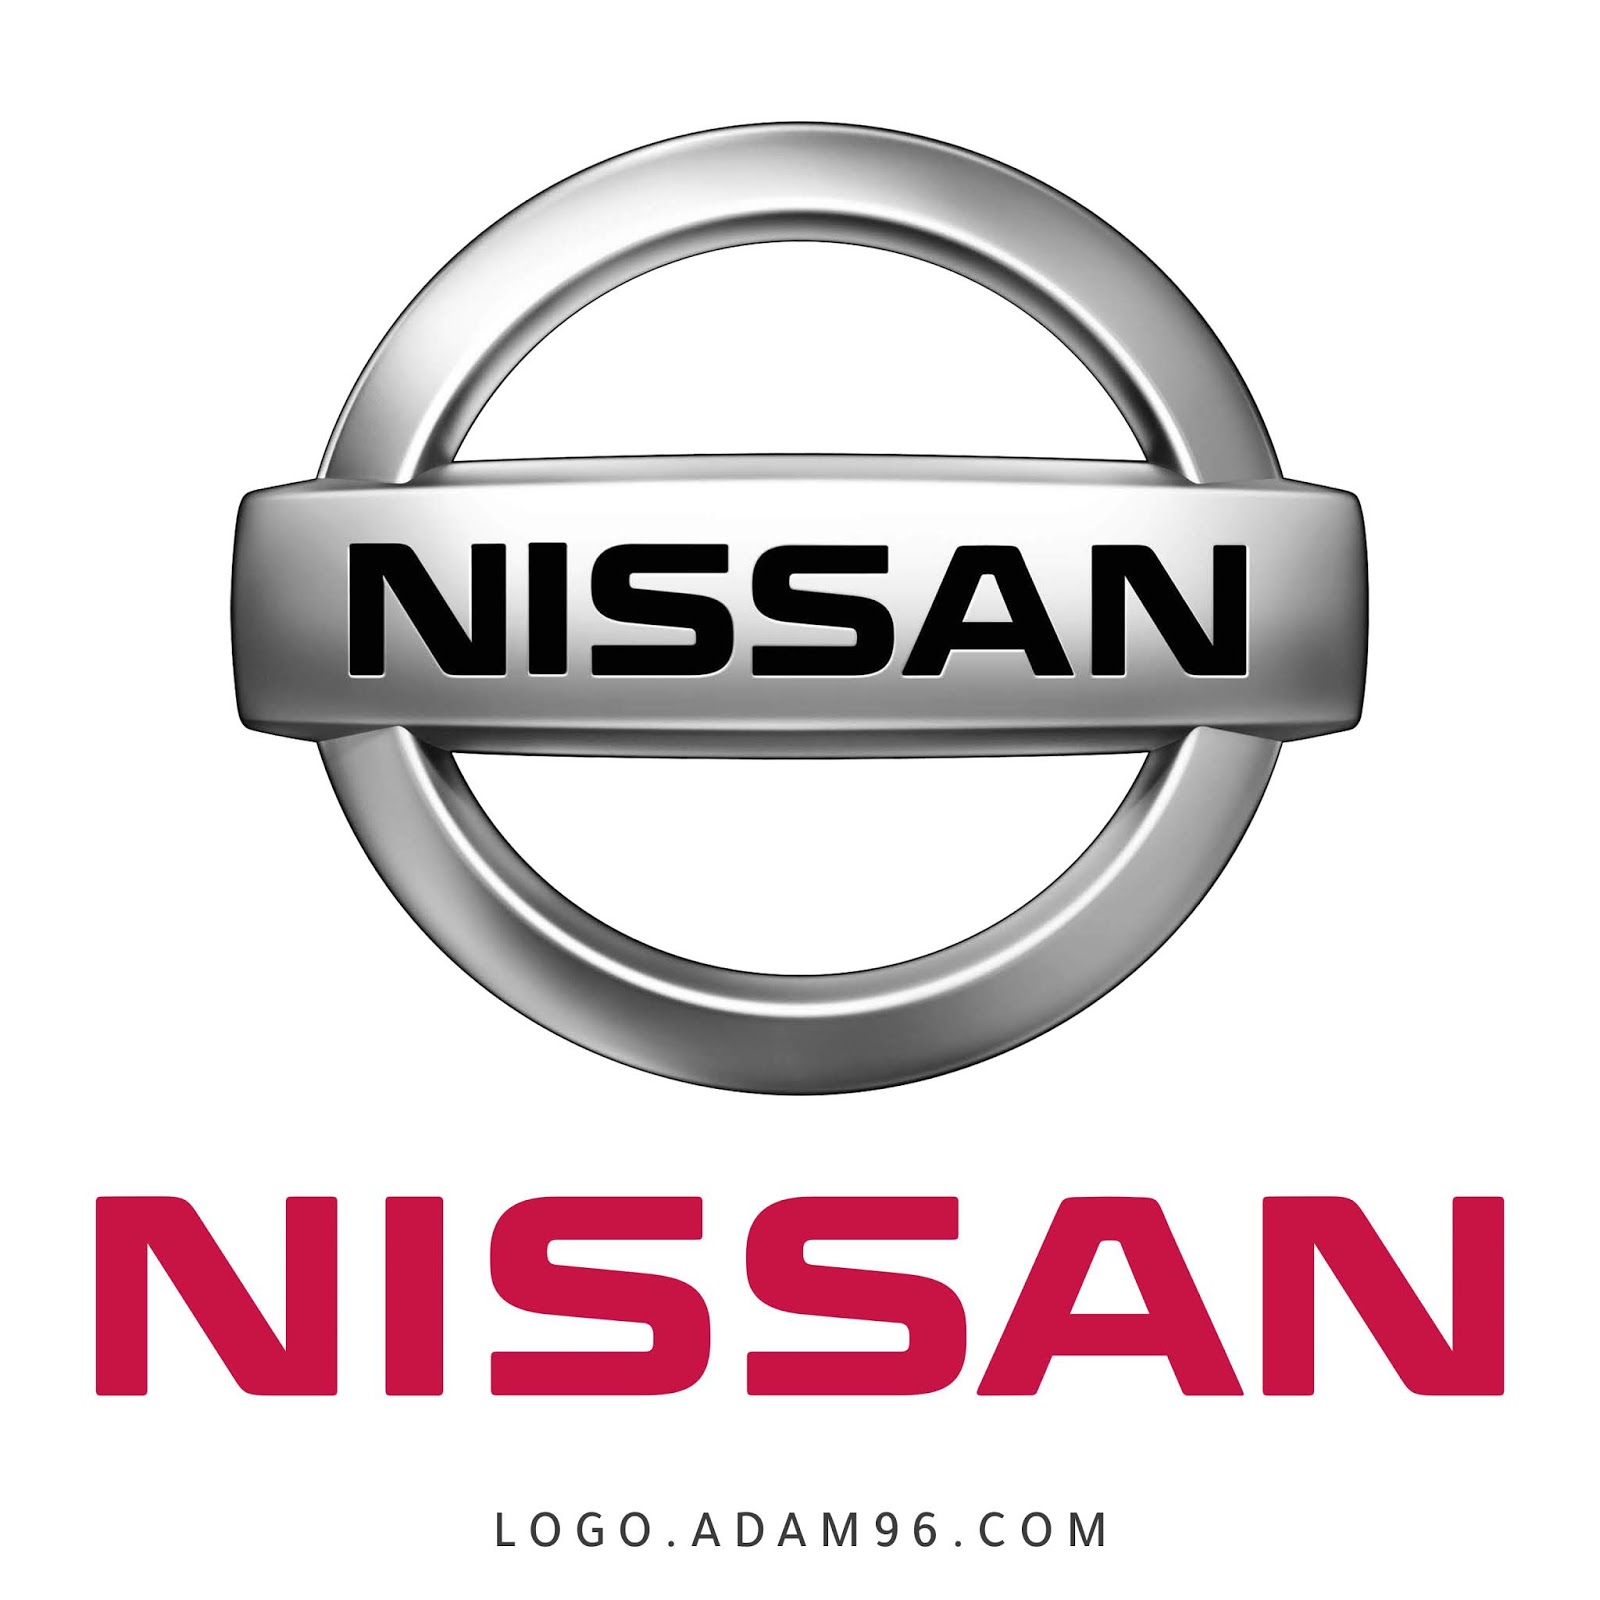 تحميل شعار شركة نيسان بجودة عالية - Nissan LOGO PNG